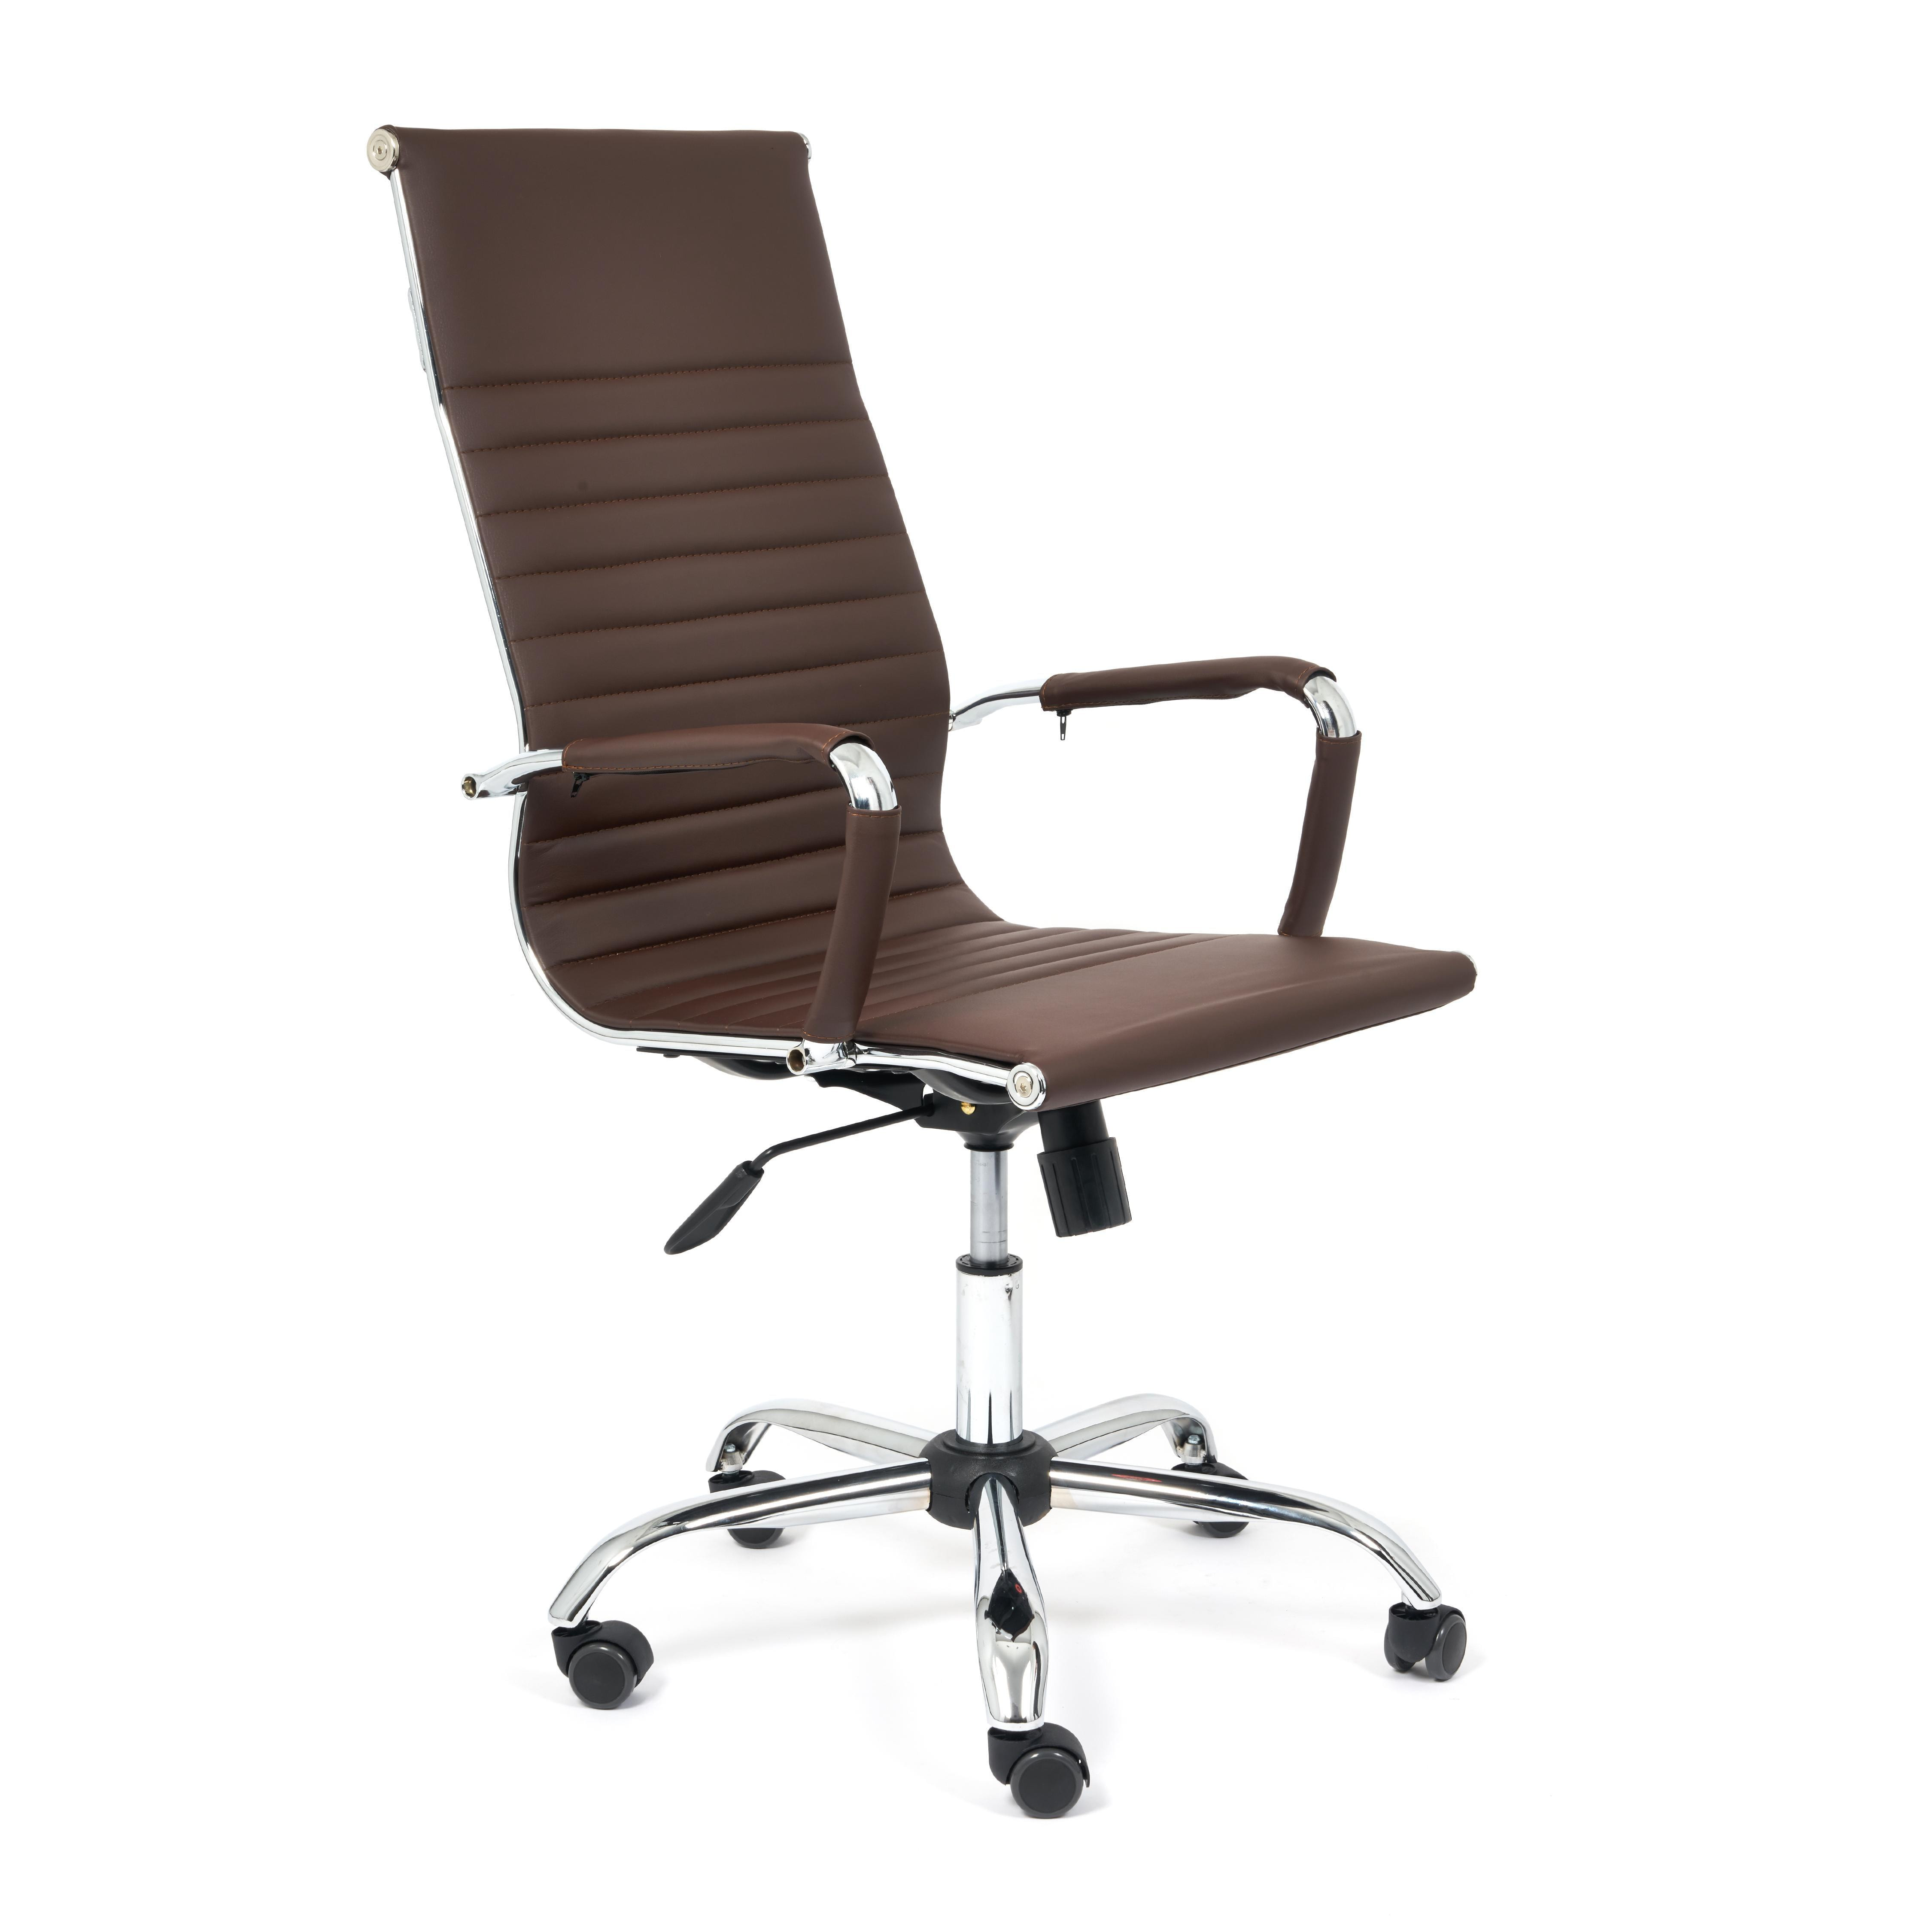 Офисное кресло с подлокотниками на металлокаркасе, обивка кож. зам коричневого цвета